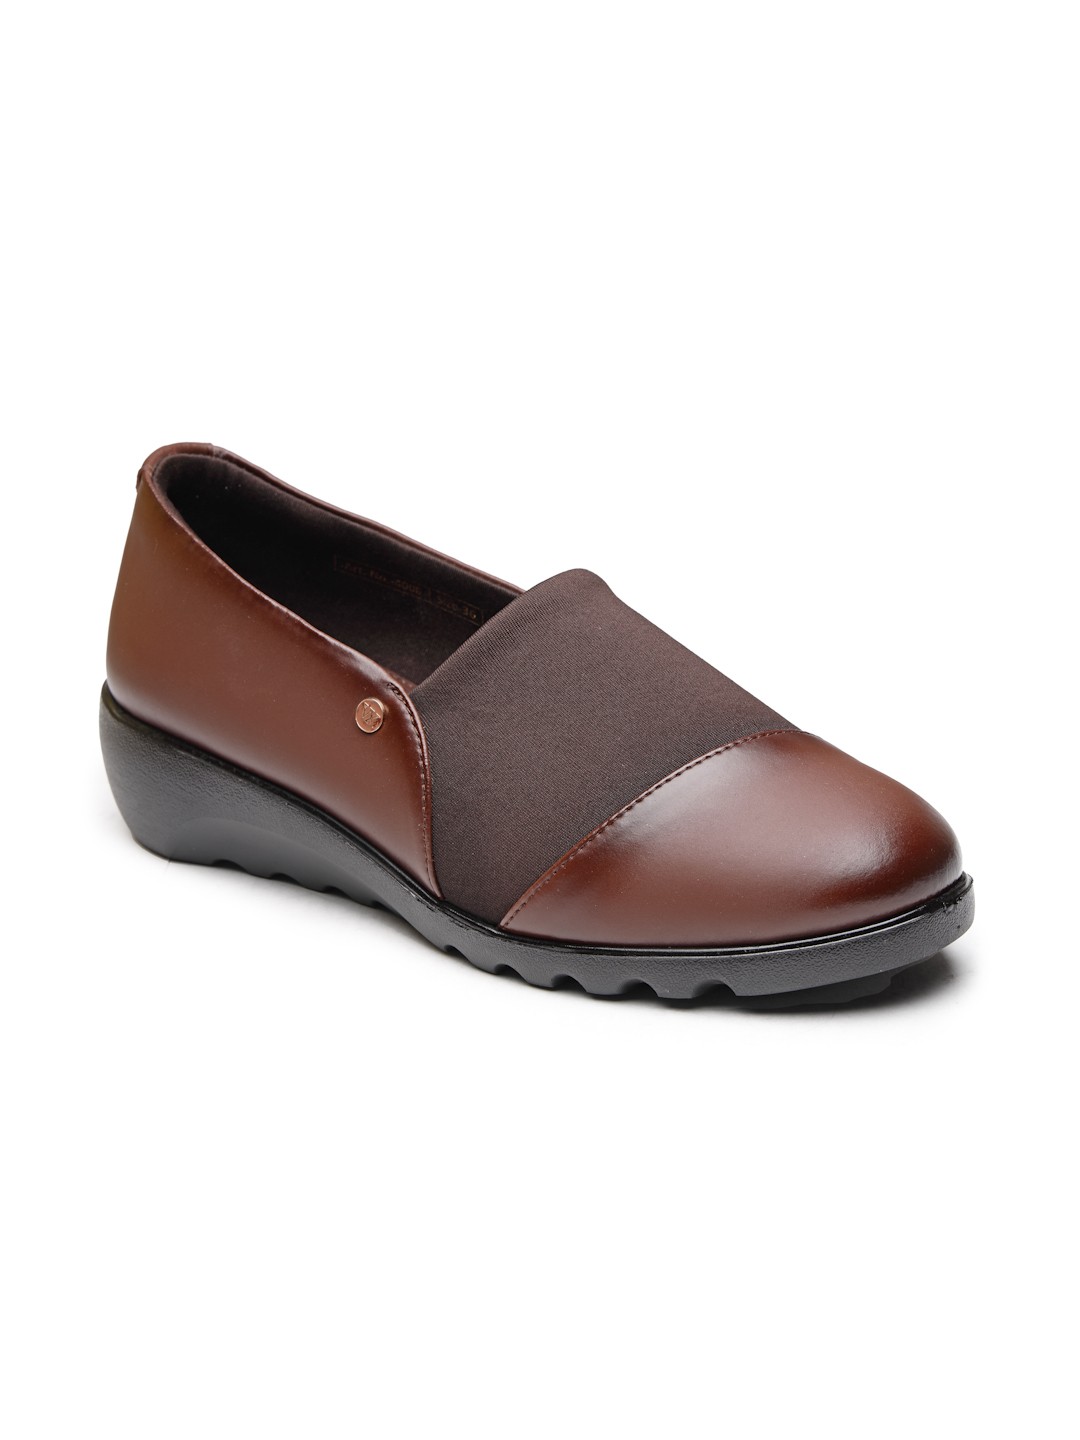 Buy Von Wellx Germany Comfort Women's Brown Casual Shoes Ayla Online in Coimbatore